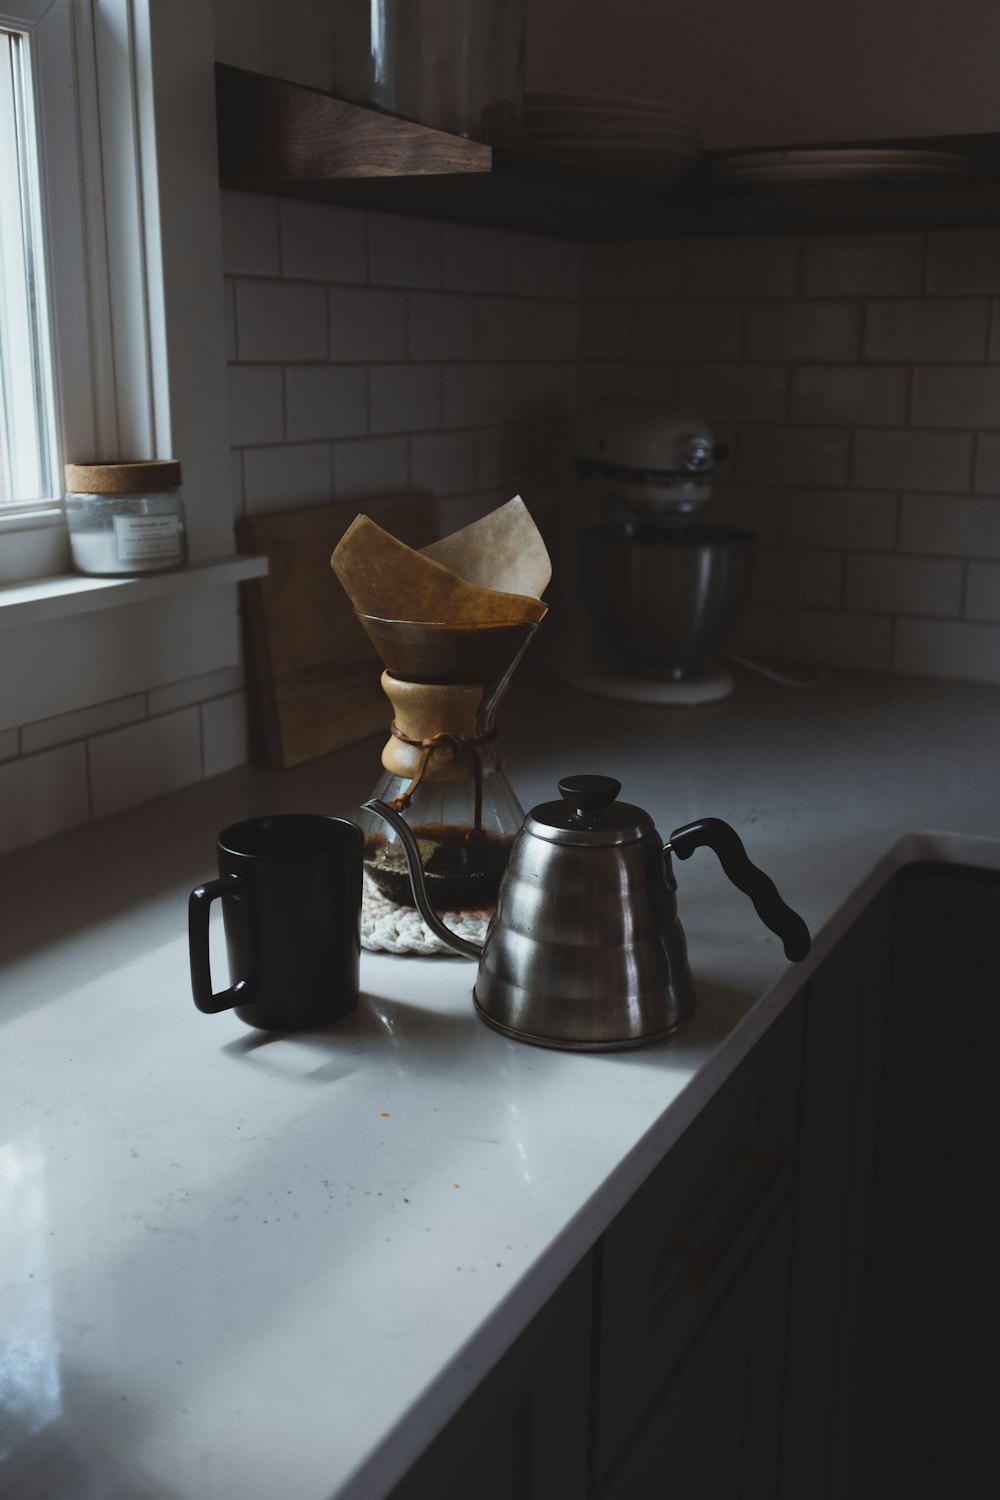 Stilllebenfotografie von Kaffee und Karaffe in der Küche